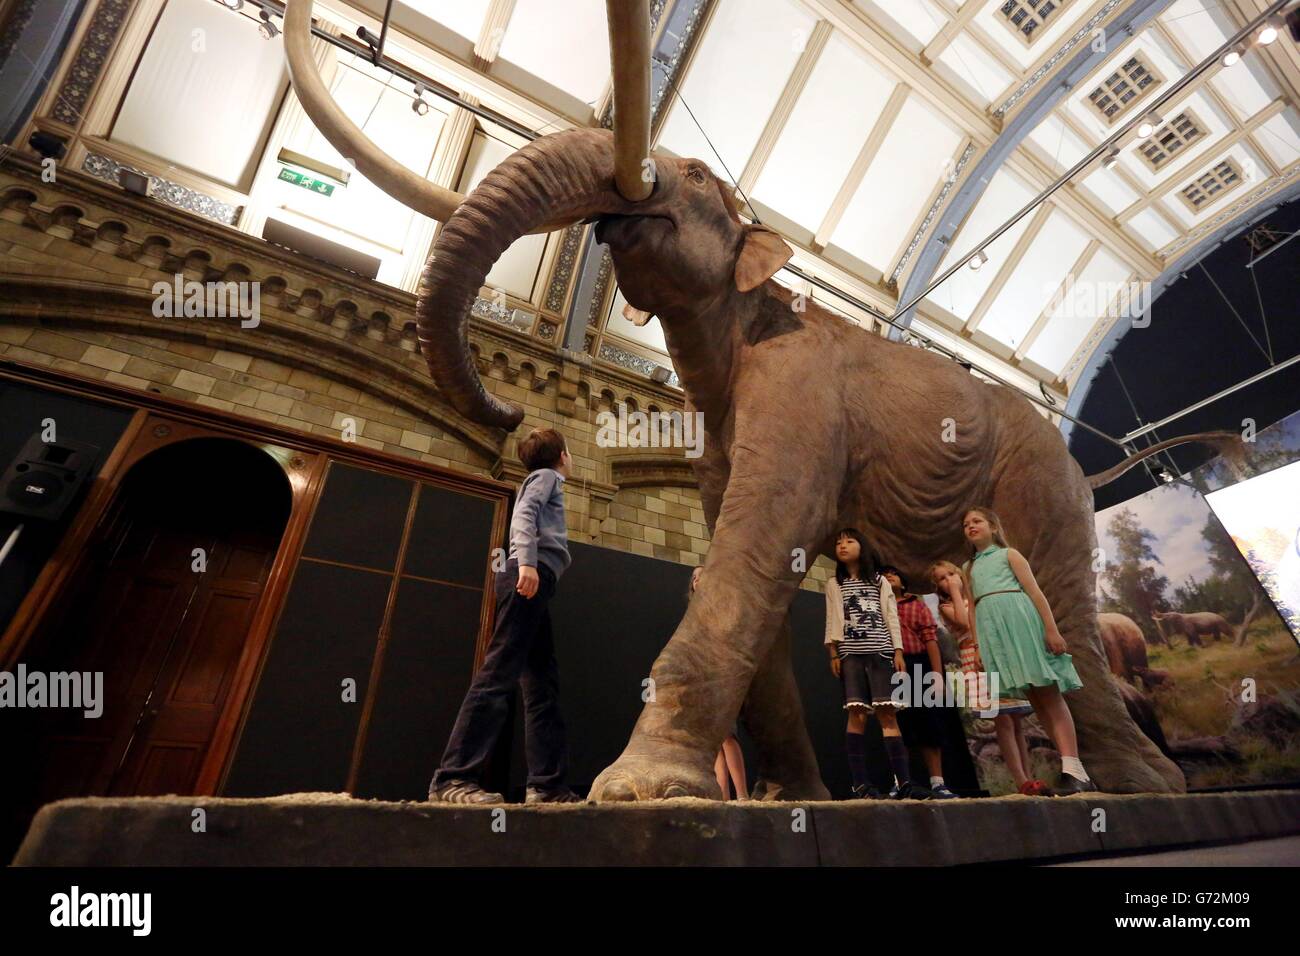 Los niños ven una mammota colombiana en la exposición Mammoth: Ice Age Giants en el Museo Nacional de Historia en el centro de Londres. Foto de stock